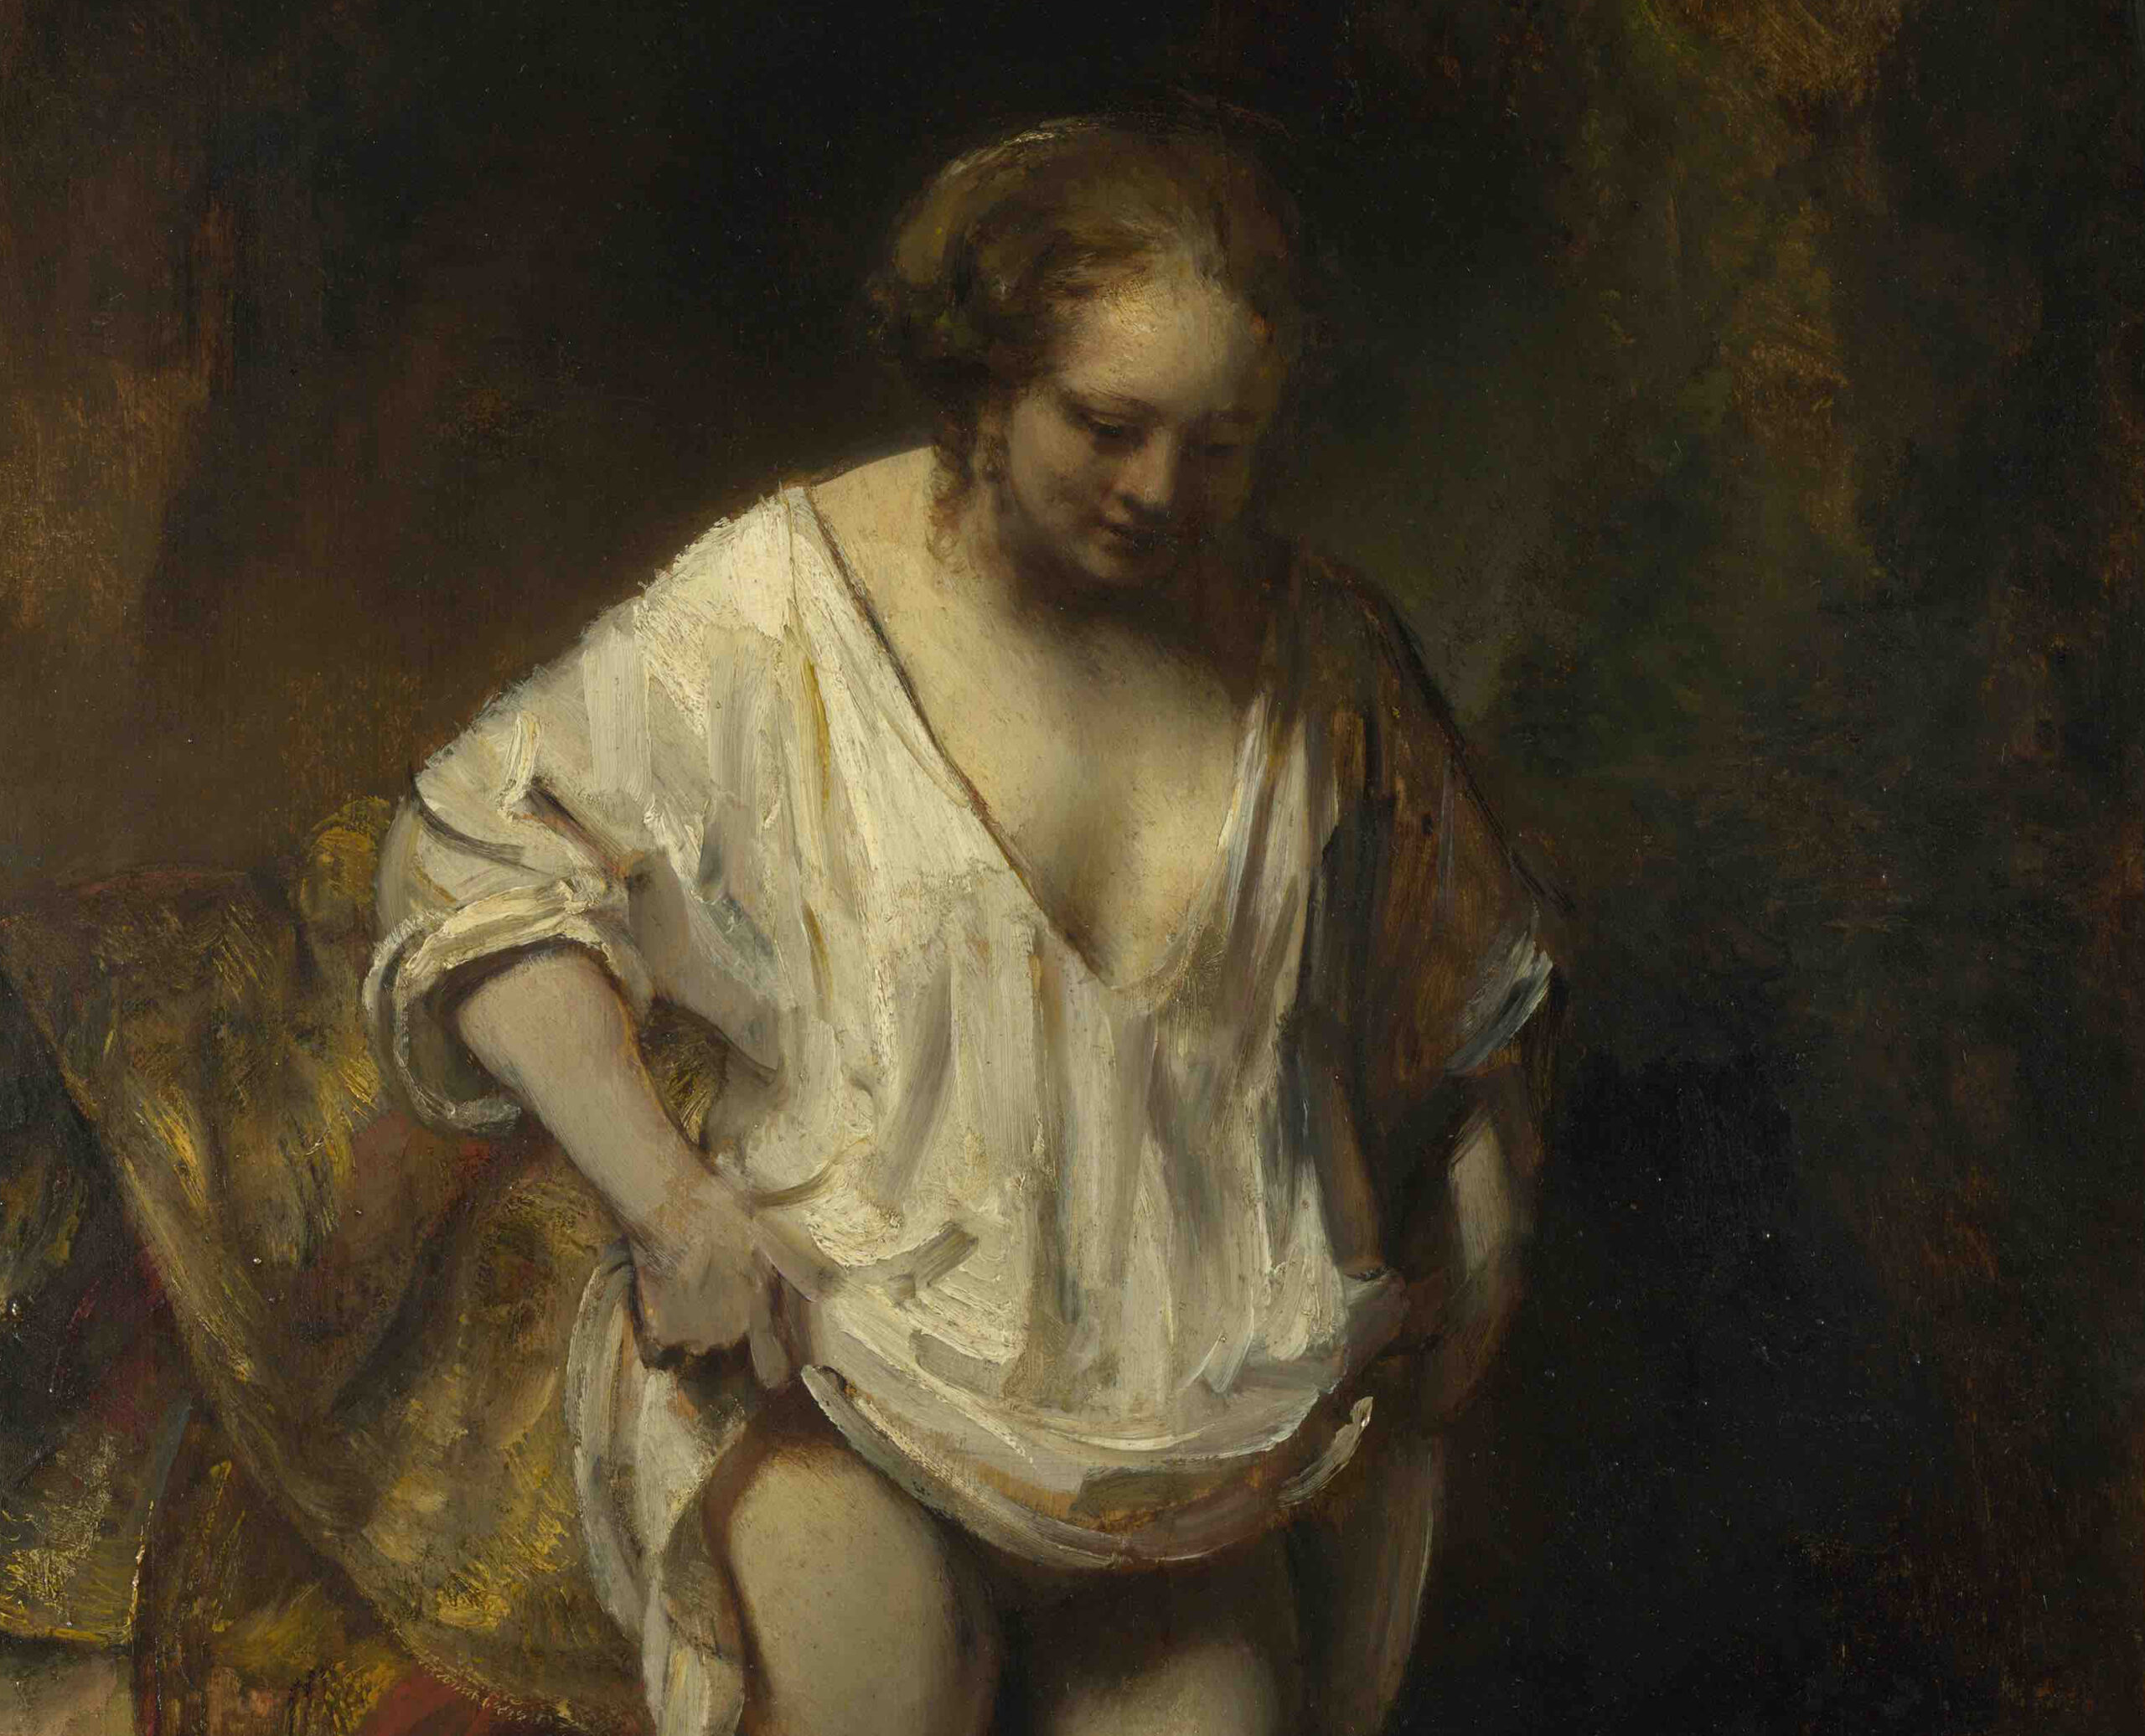 Giovane donna al bagno in un ruscello. Viaggio nel dipinto di Rembrandt